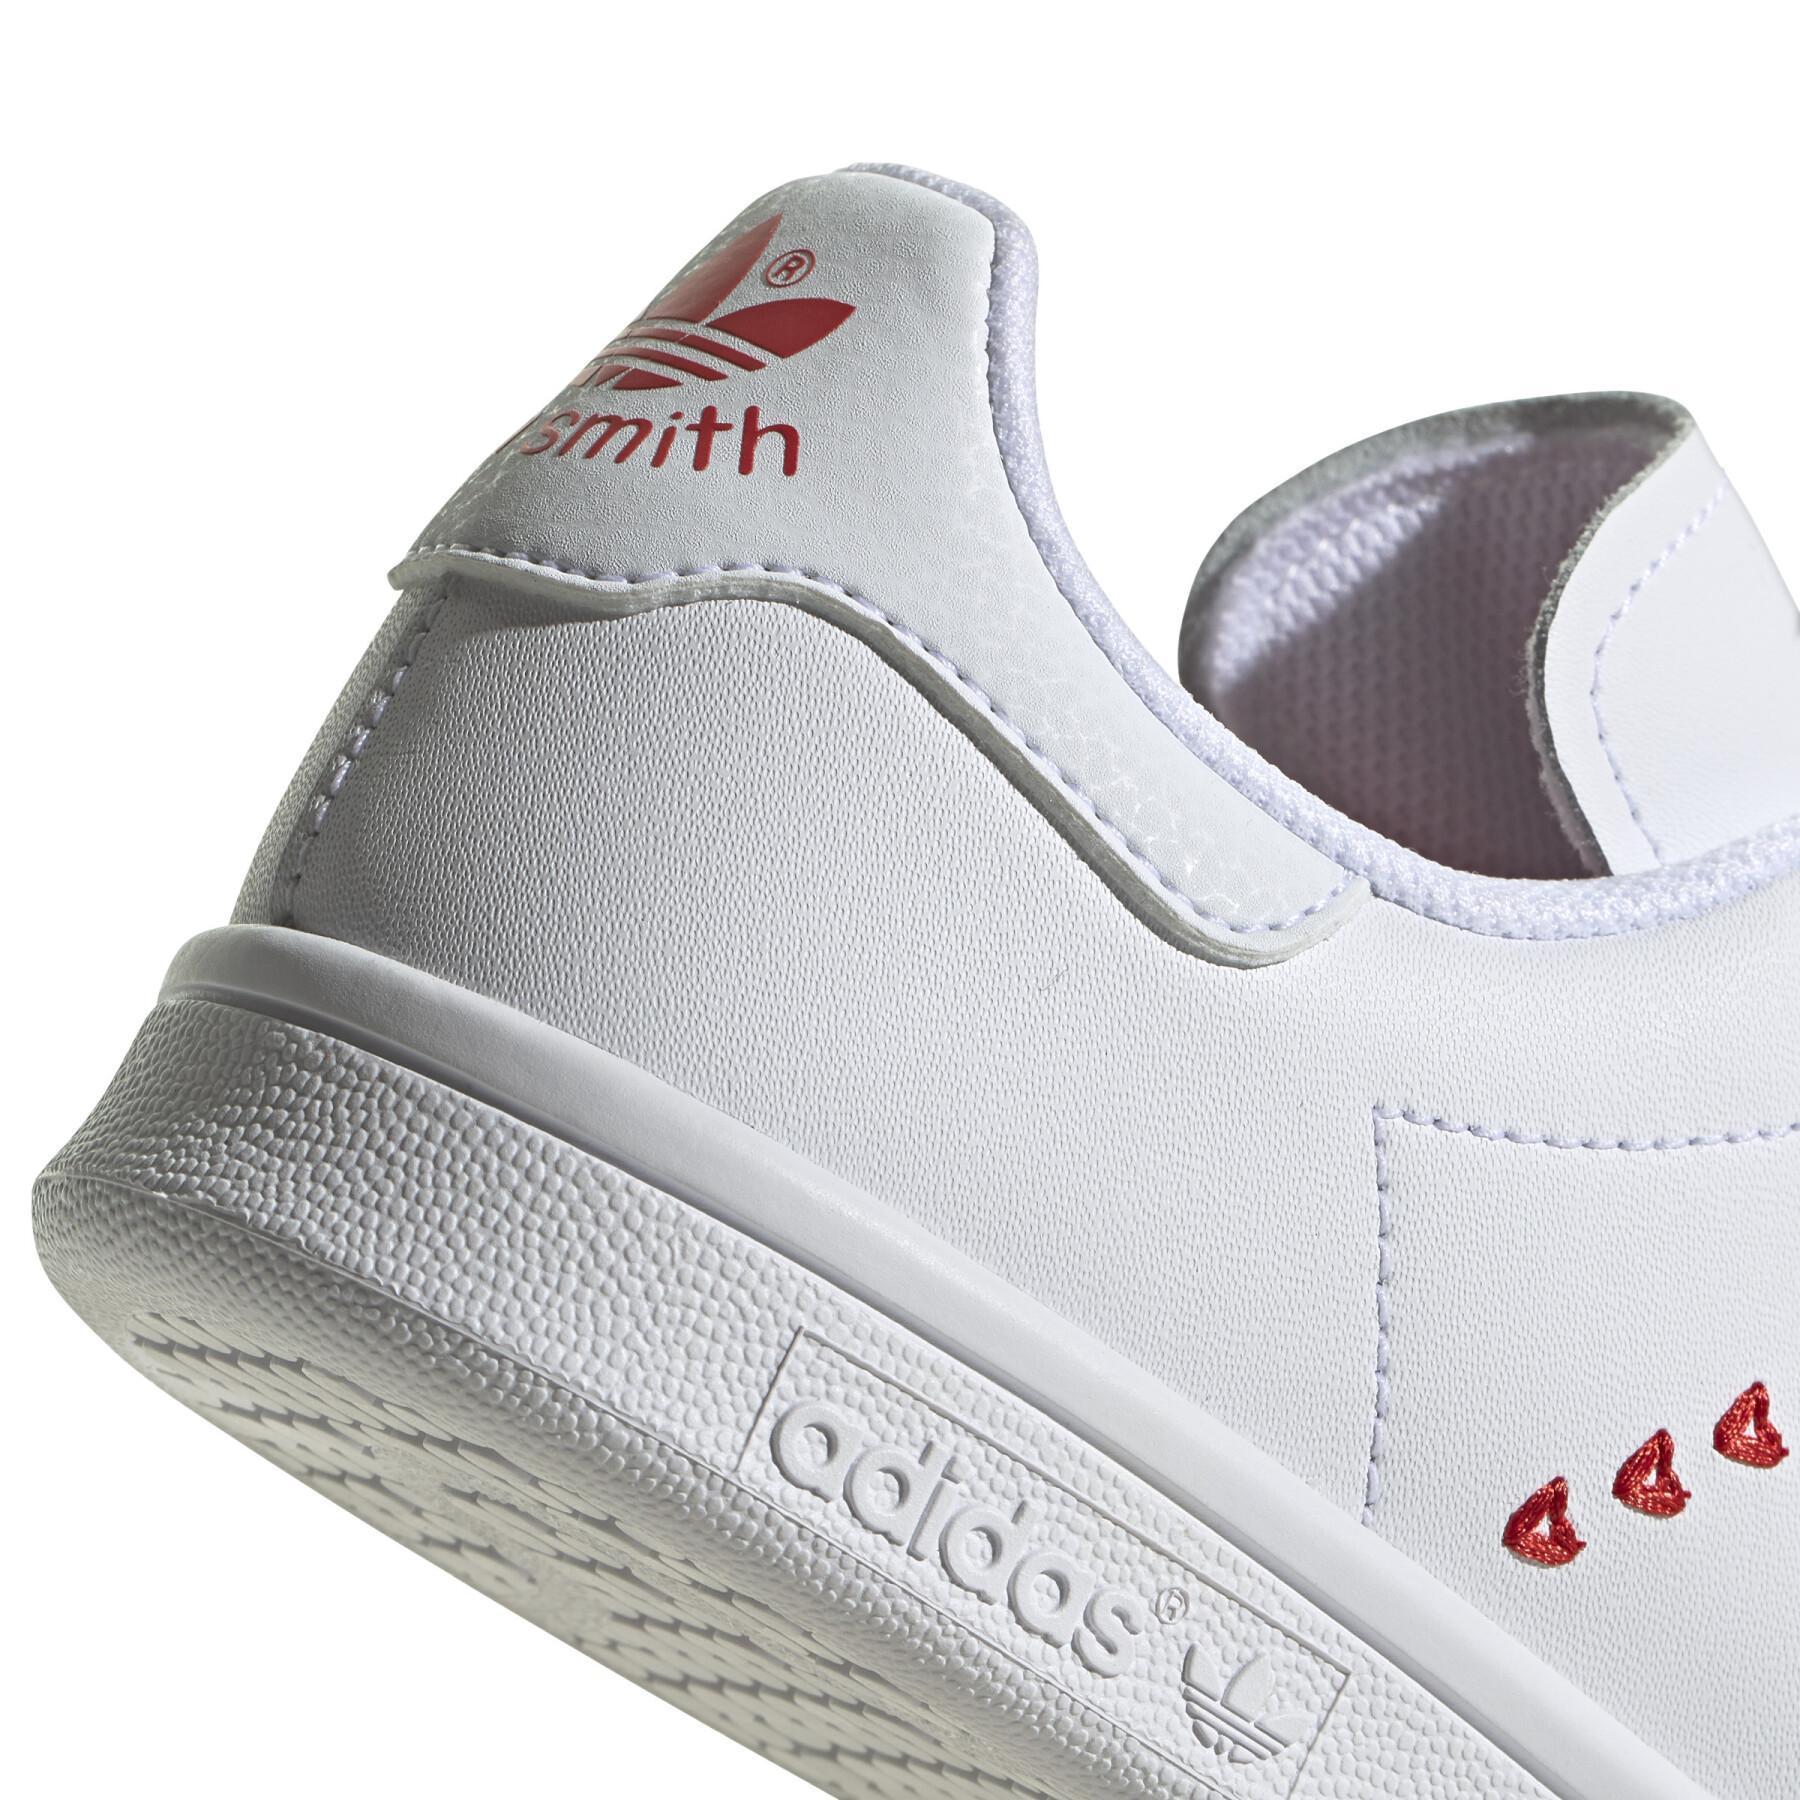 Children's sneakers adidas Originals Stan Smith